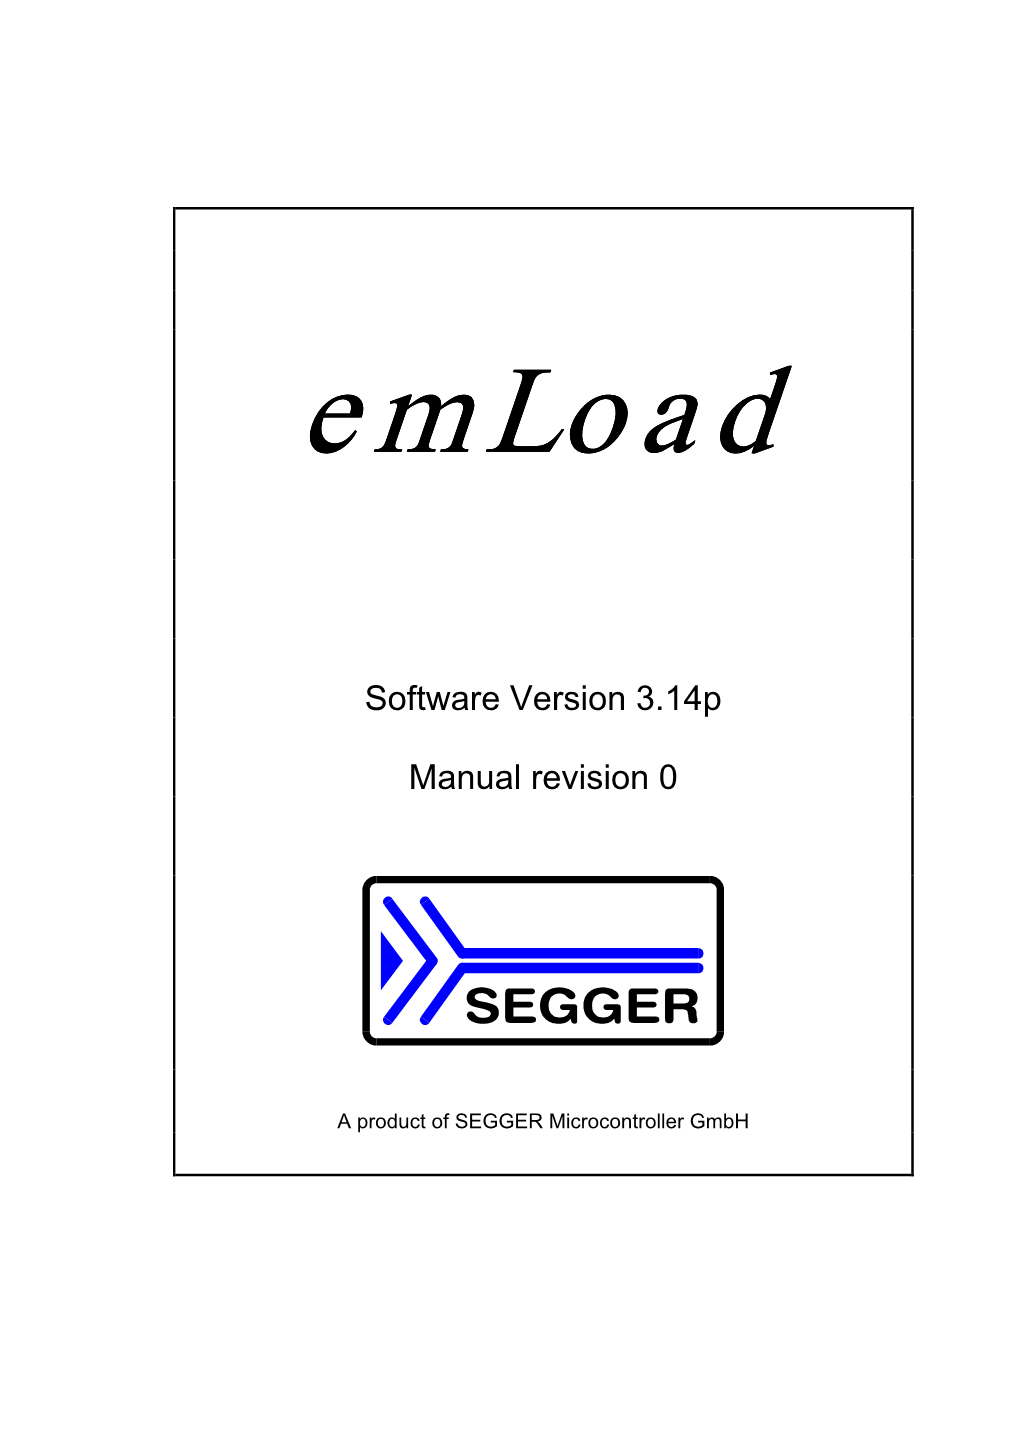 User Manual for Emload , Version 3.14